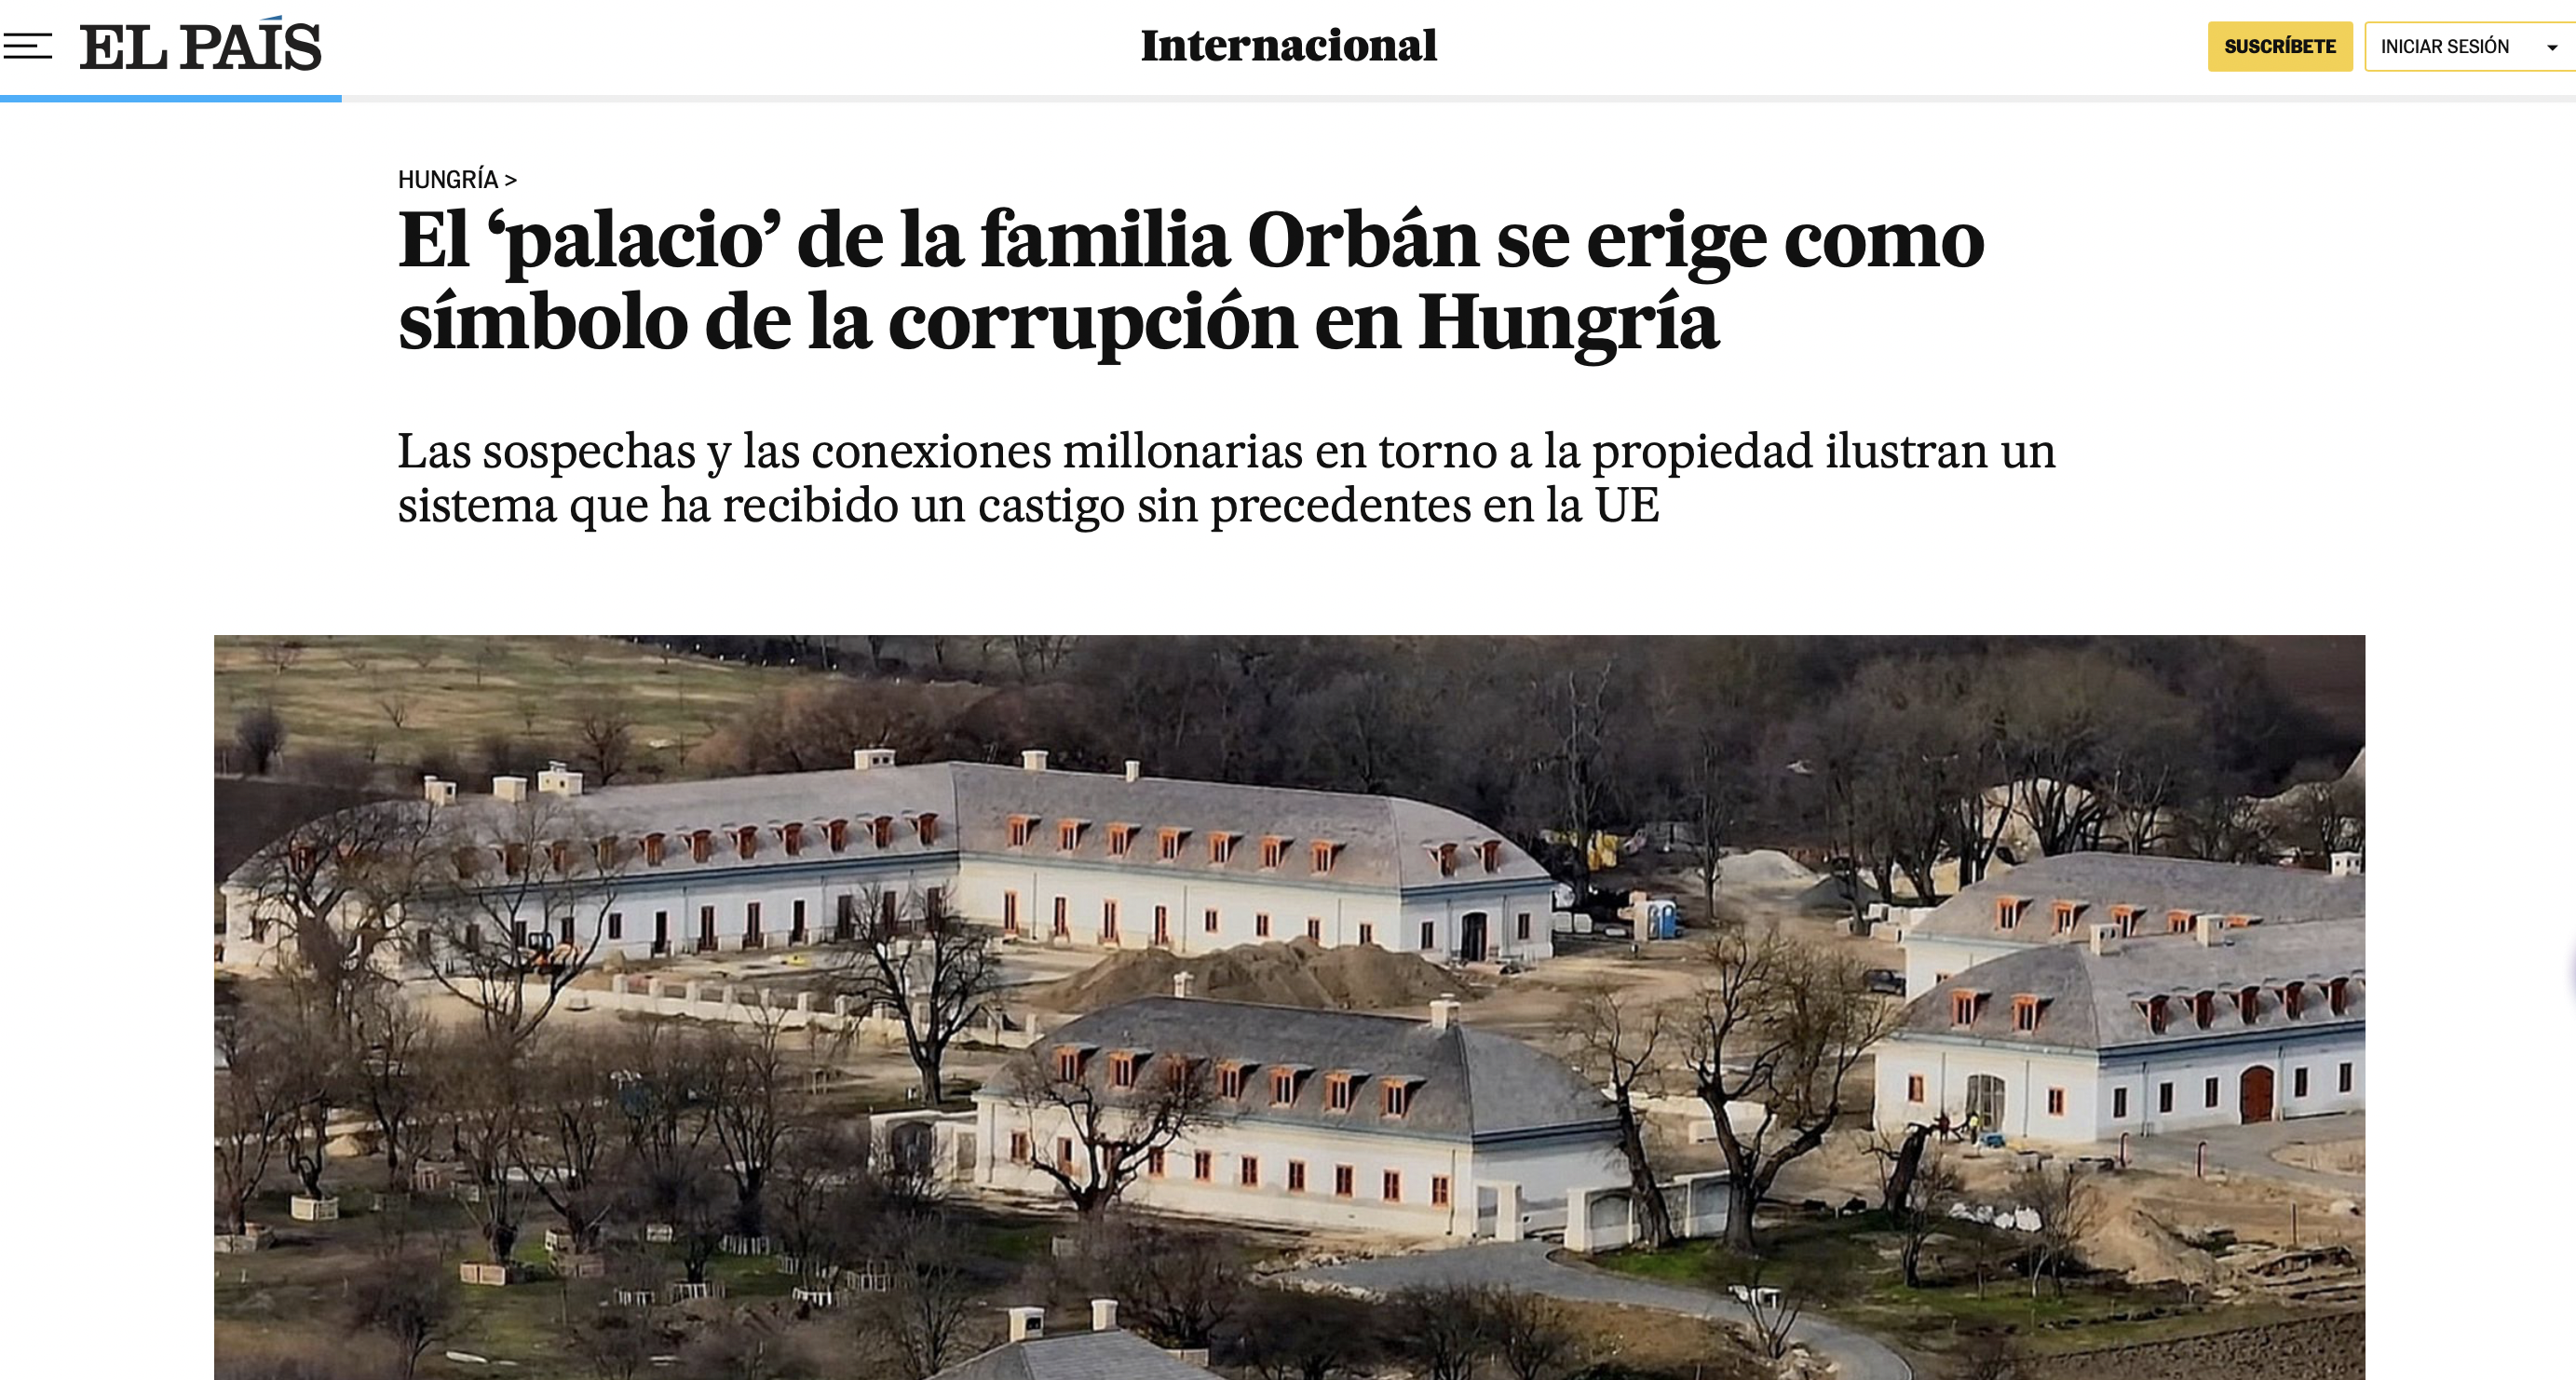 Orbánék hatvanpusztai „palotájáról”, mint a korrupció szimbólumáról cikkezik egy vezető spanyol lap